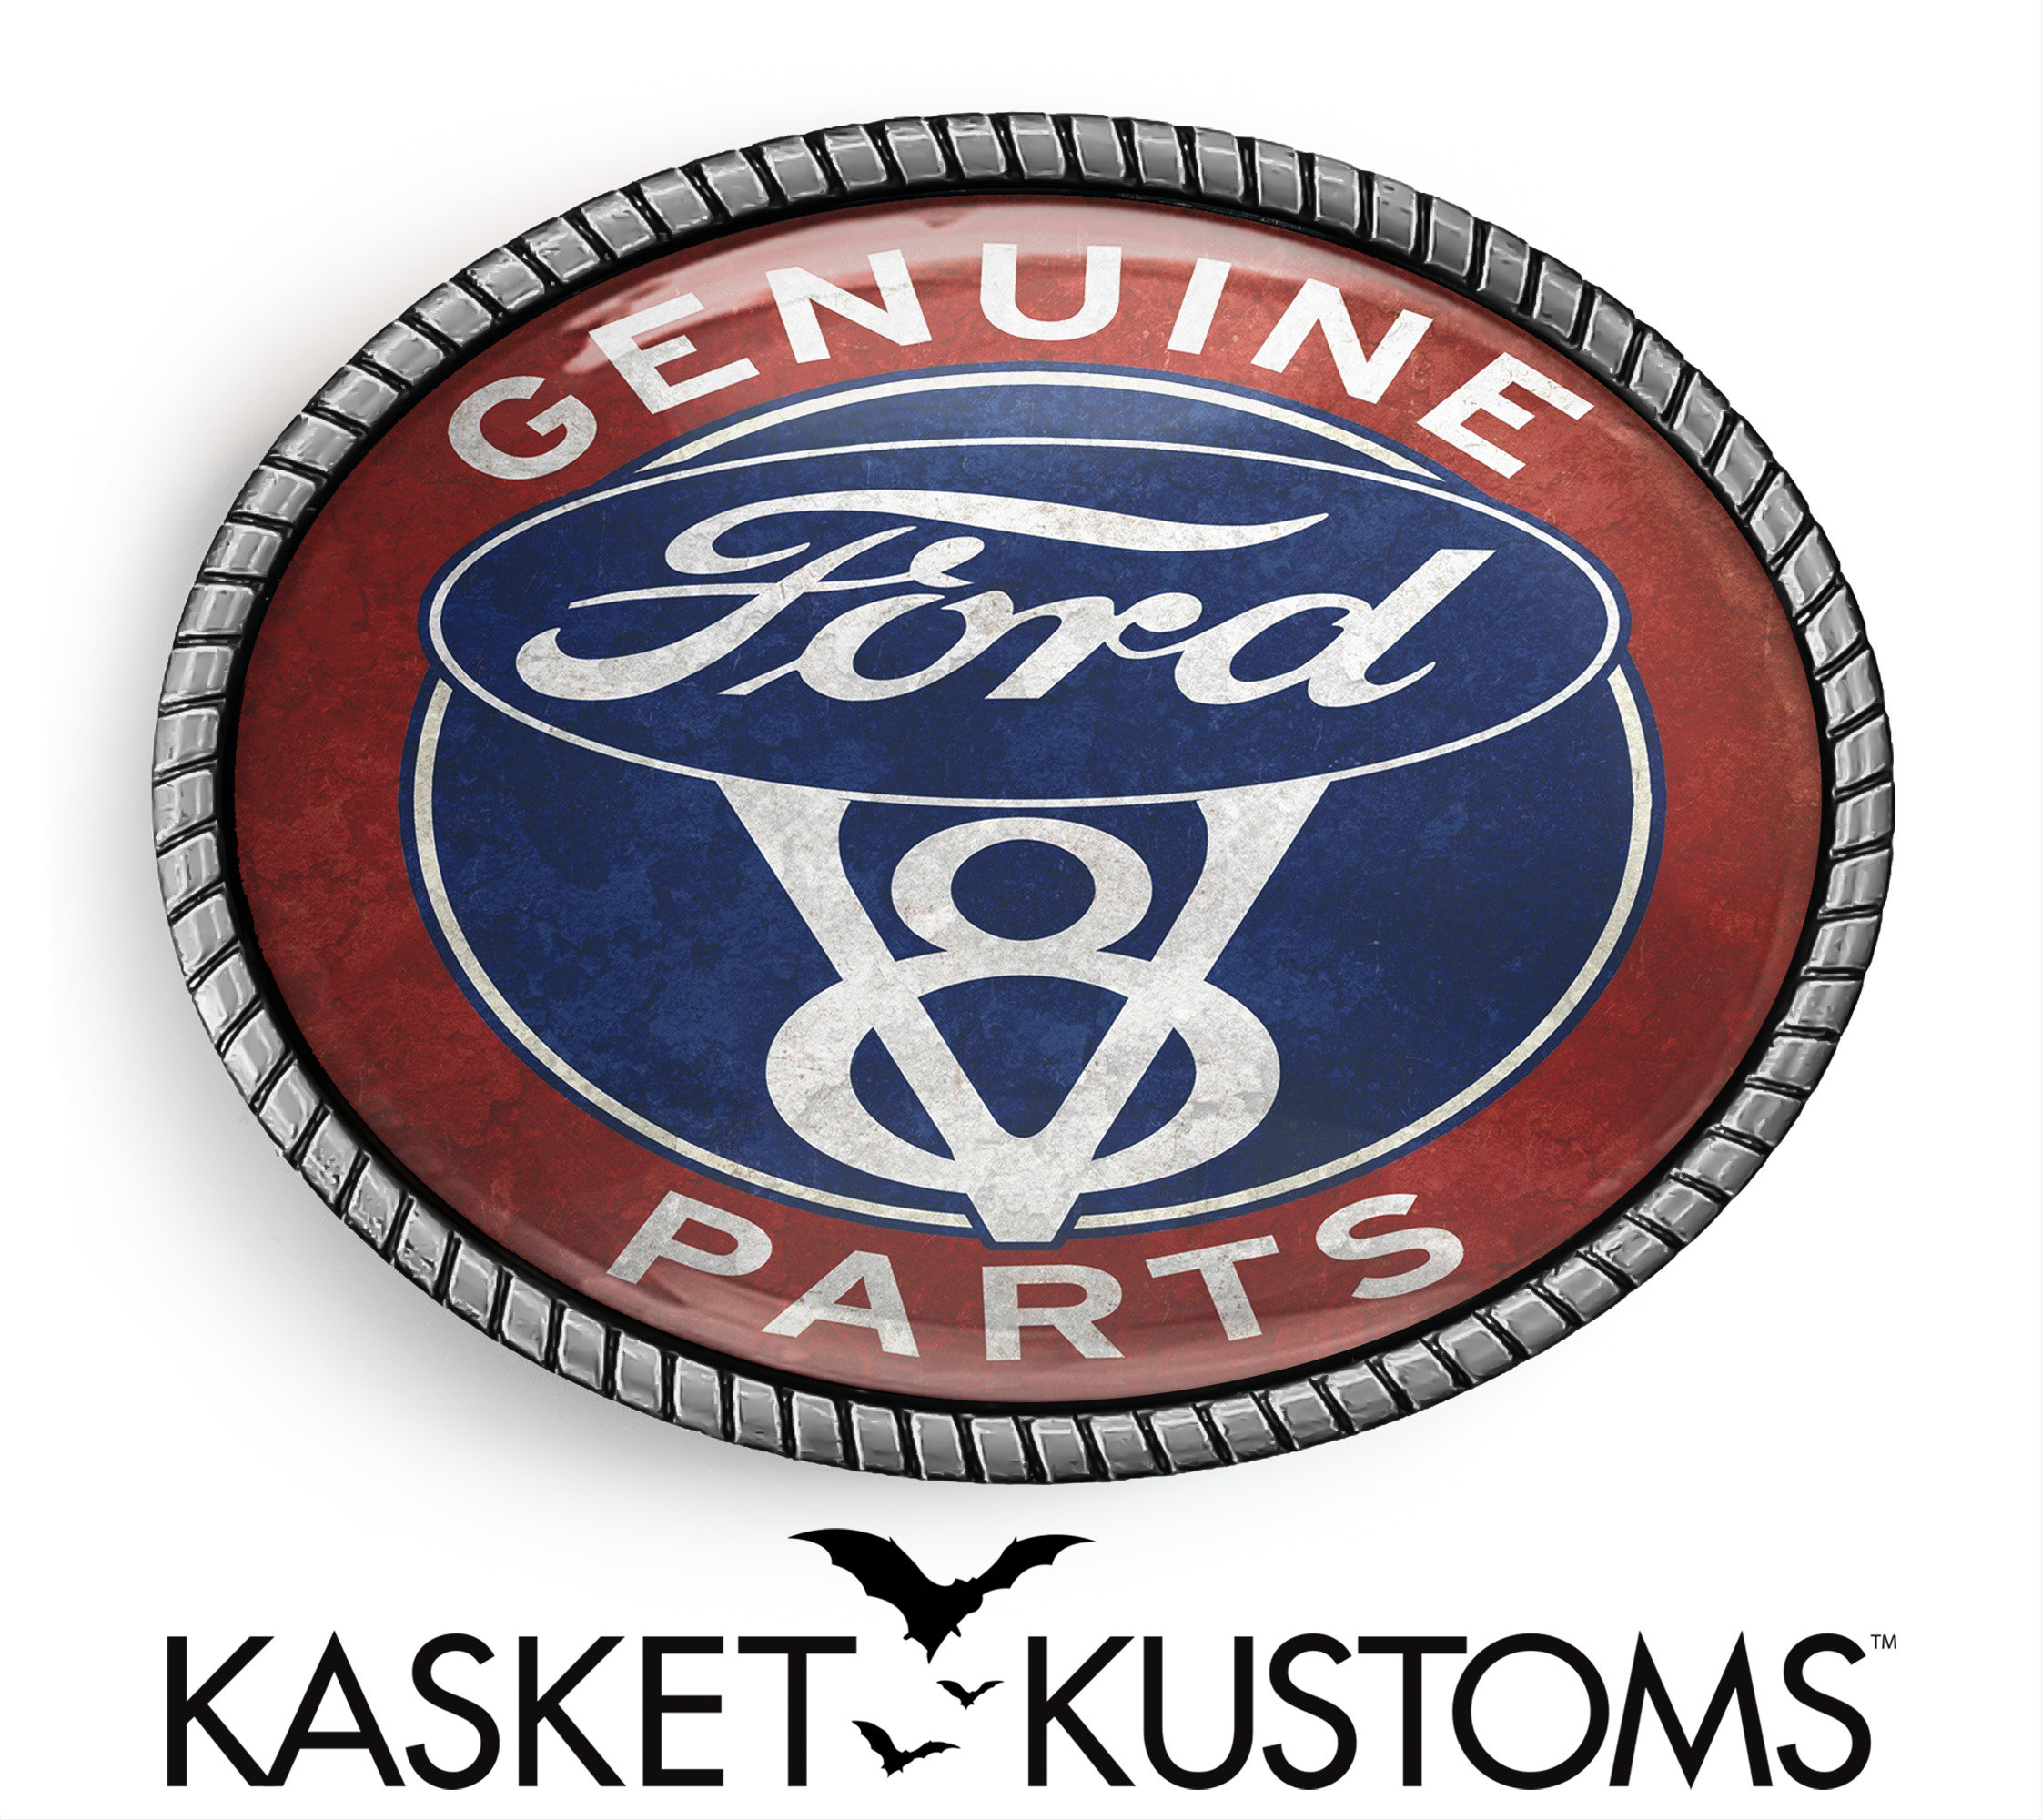 Ford oval badge emblem: original 116x46mm size